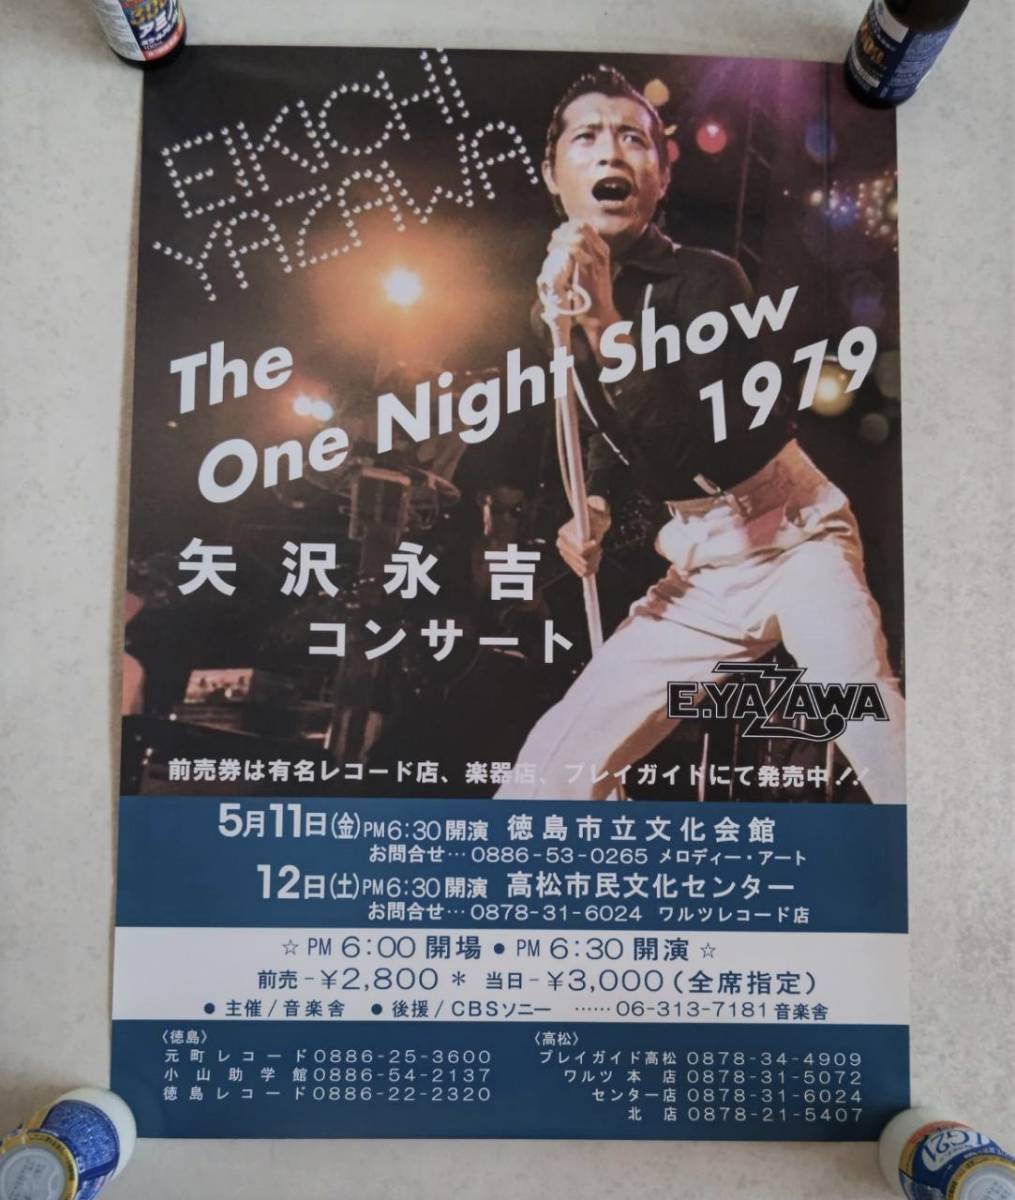 矢沢永吉 The One Night Show 1979 告知 ポスター-